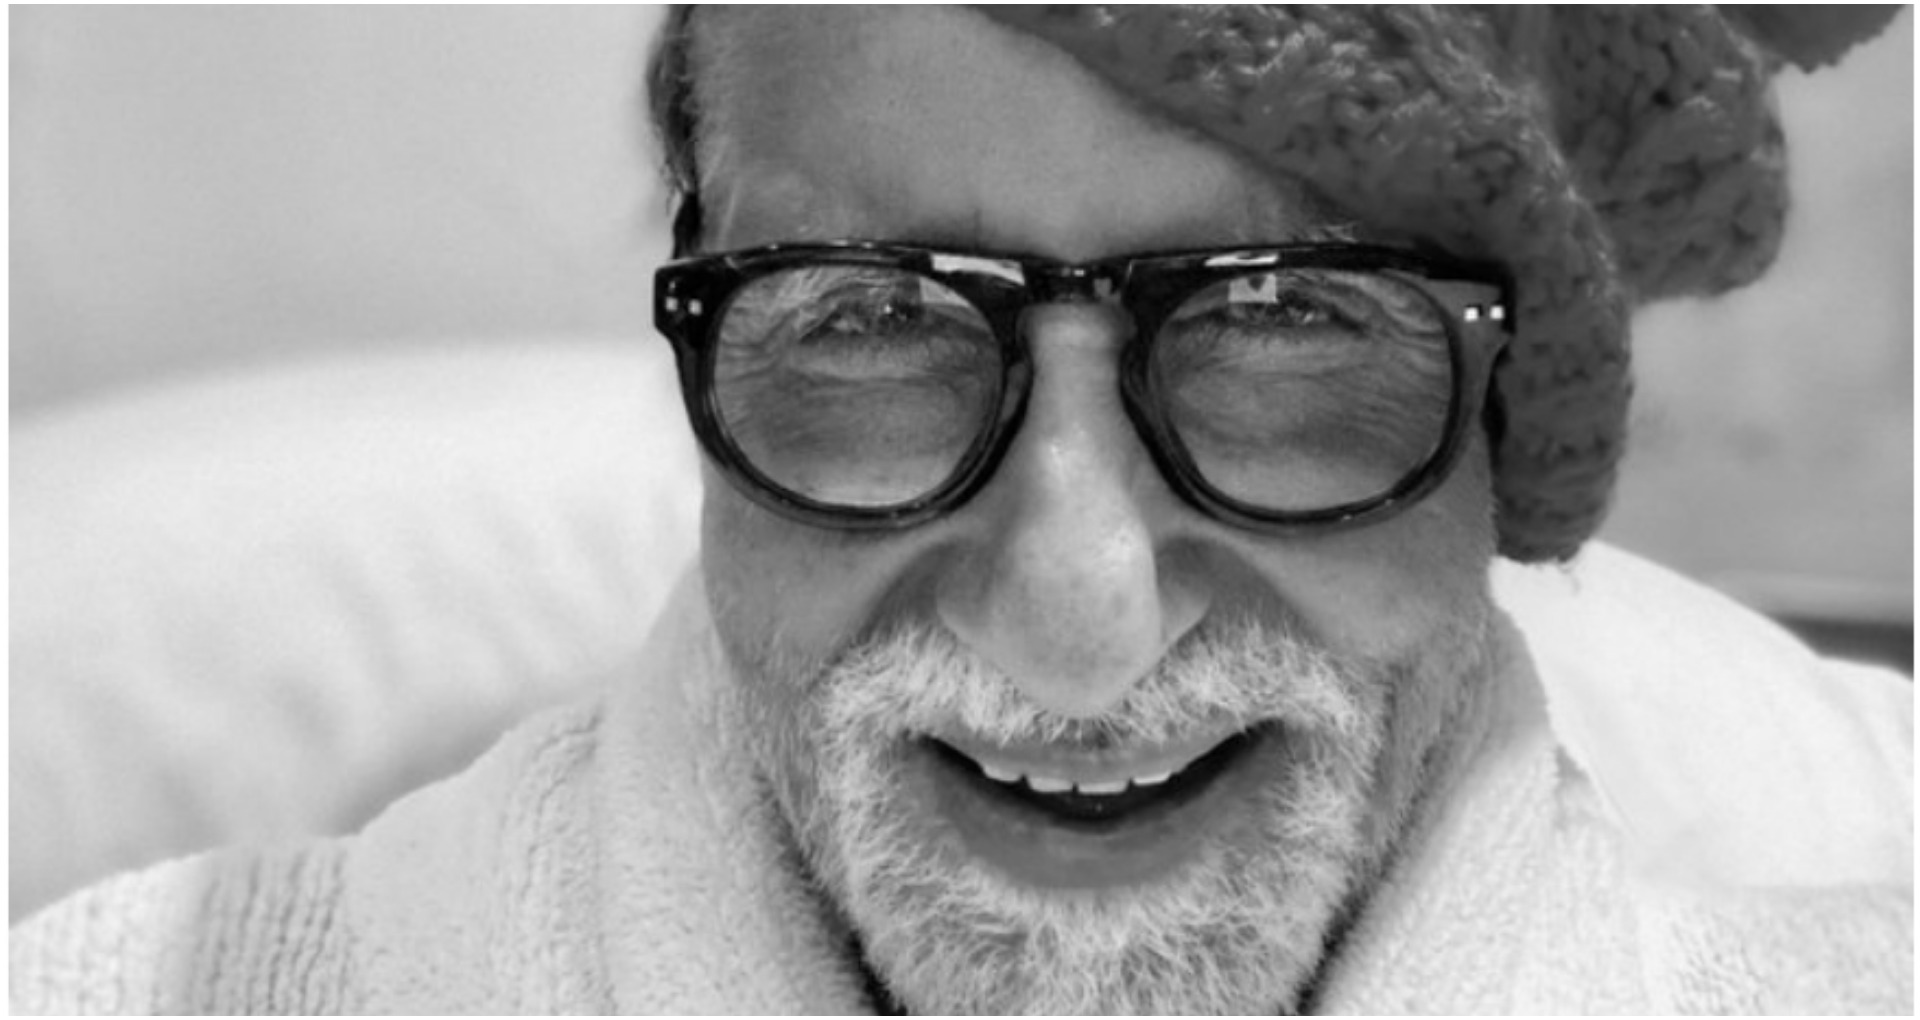 सुपरस्टार अमिताभ बच्चन ने फादर्स डे पर पिता की याद में लिखी ऐसी बात, जिसे पढ़कर इमोशनल जो जाएंगे आप